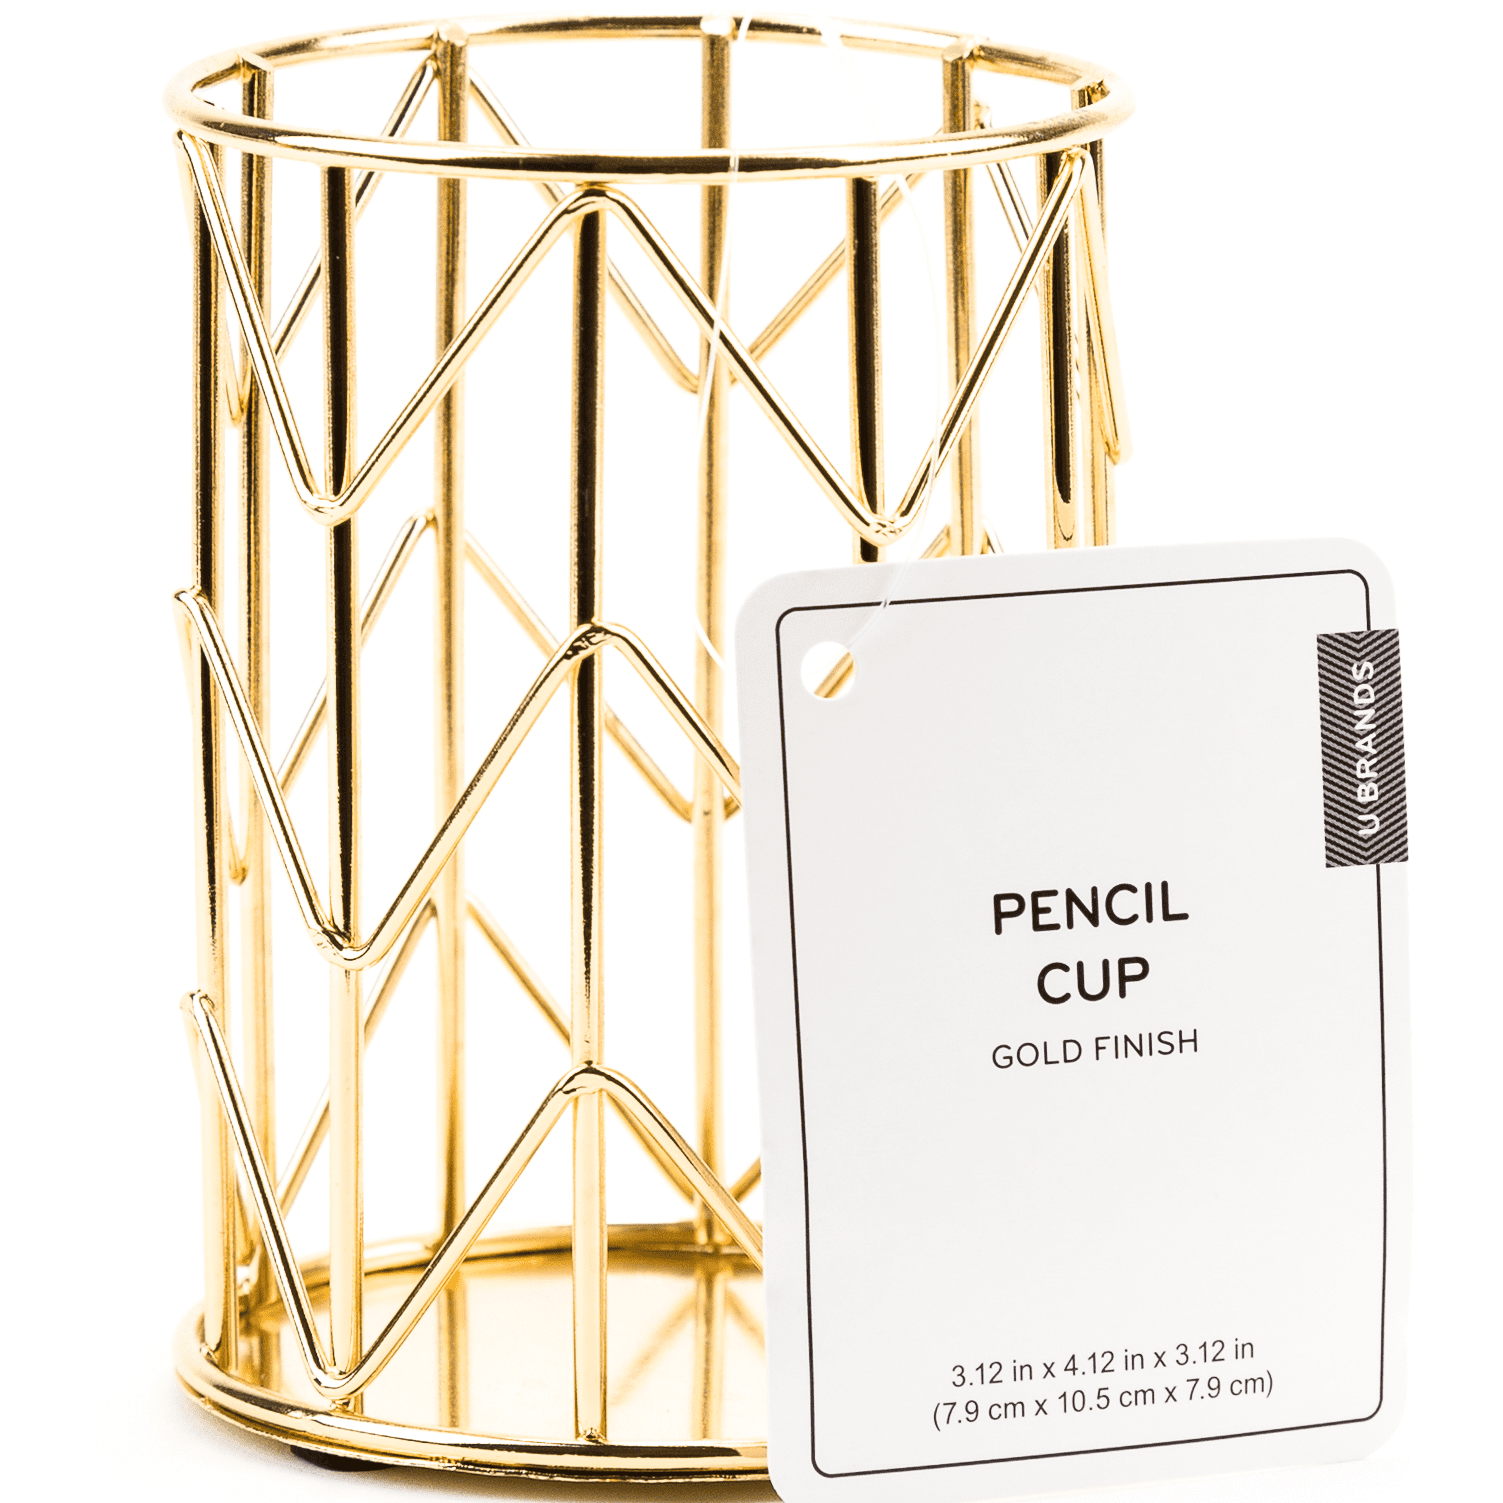 U BRAND Wire Metal Pencil Cup, Desktop Accessories, Gold Finish, 897U 